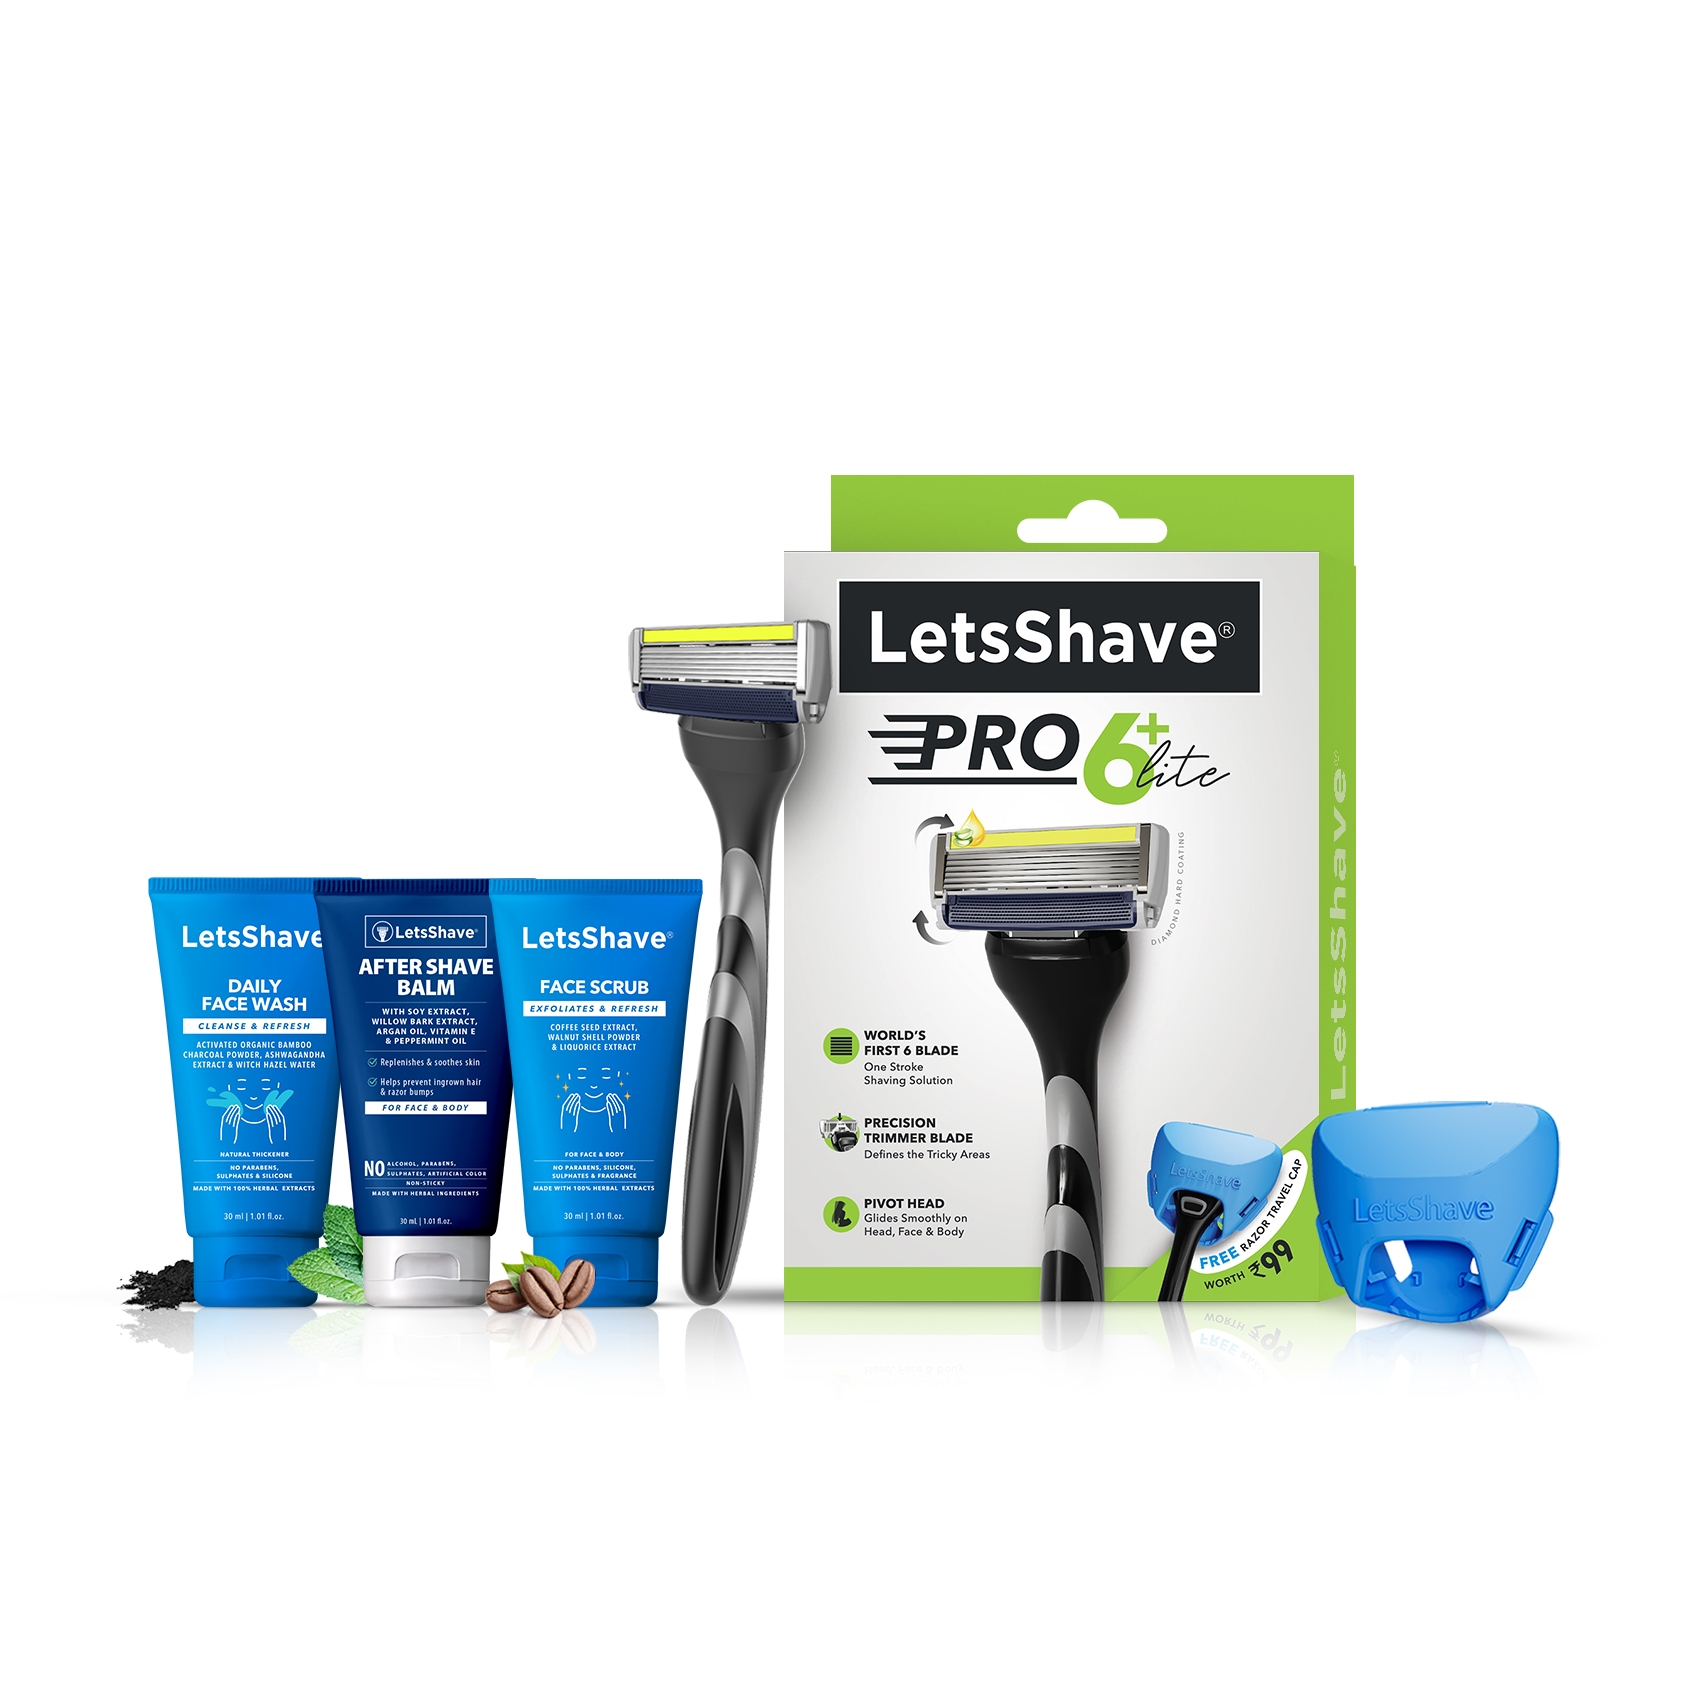 LetsShave | LetsShave Pro 6 Lite Razor + After Shave Balm 30ml + Transparent Shave Gel 30ml + Face Scrub 30ml